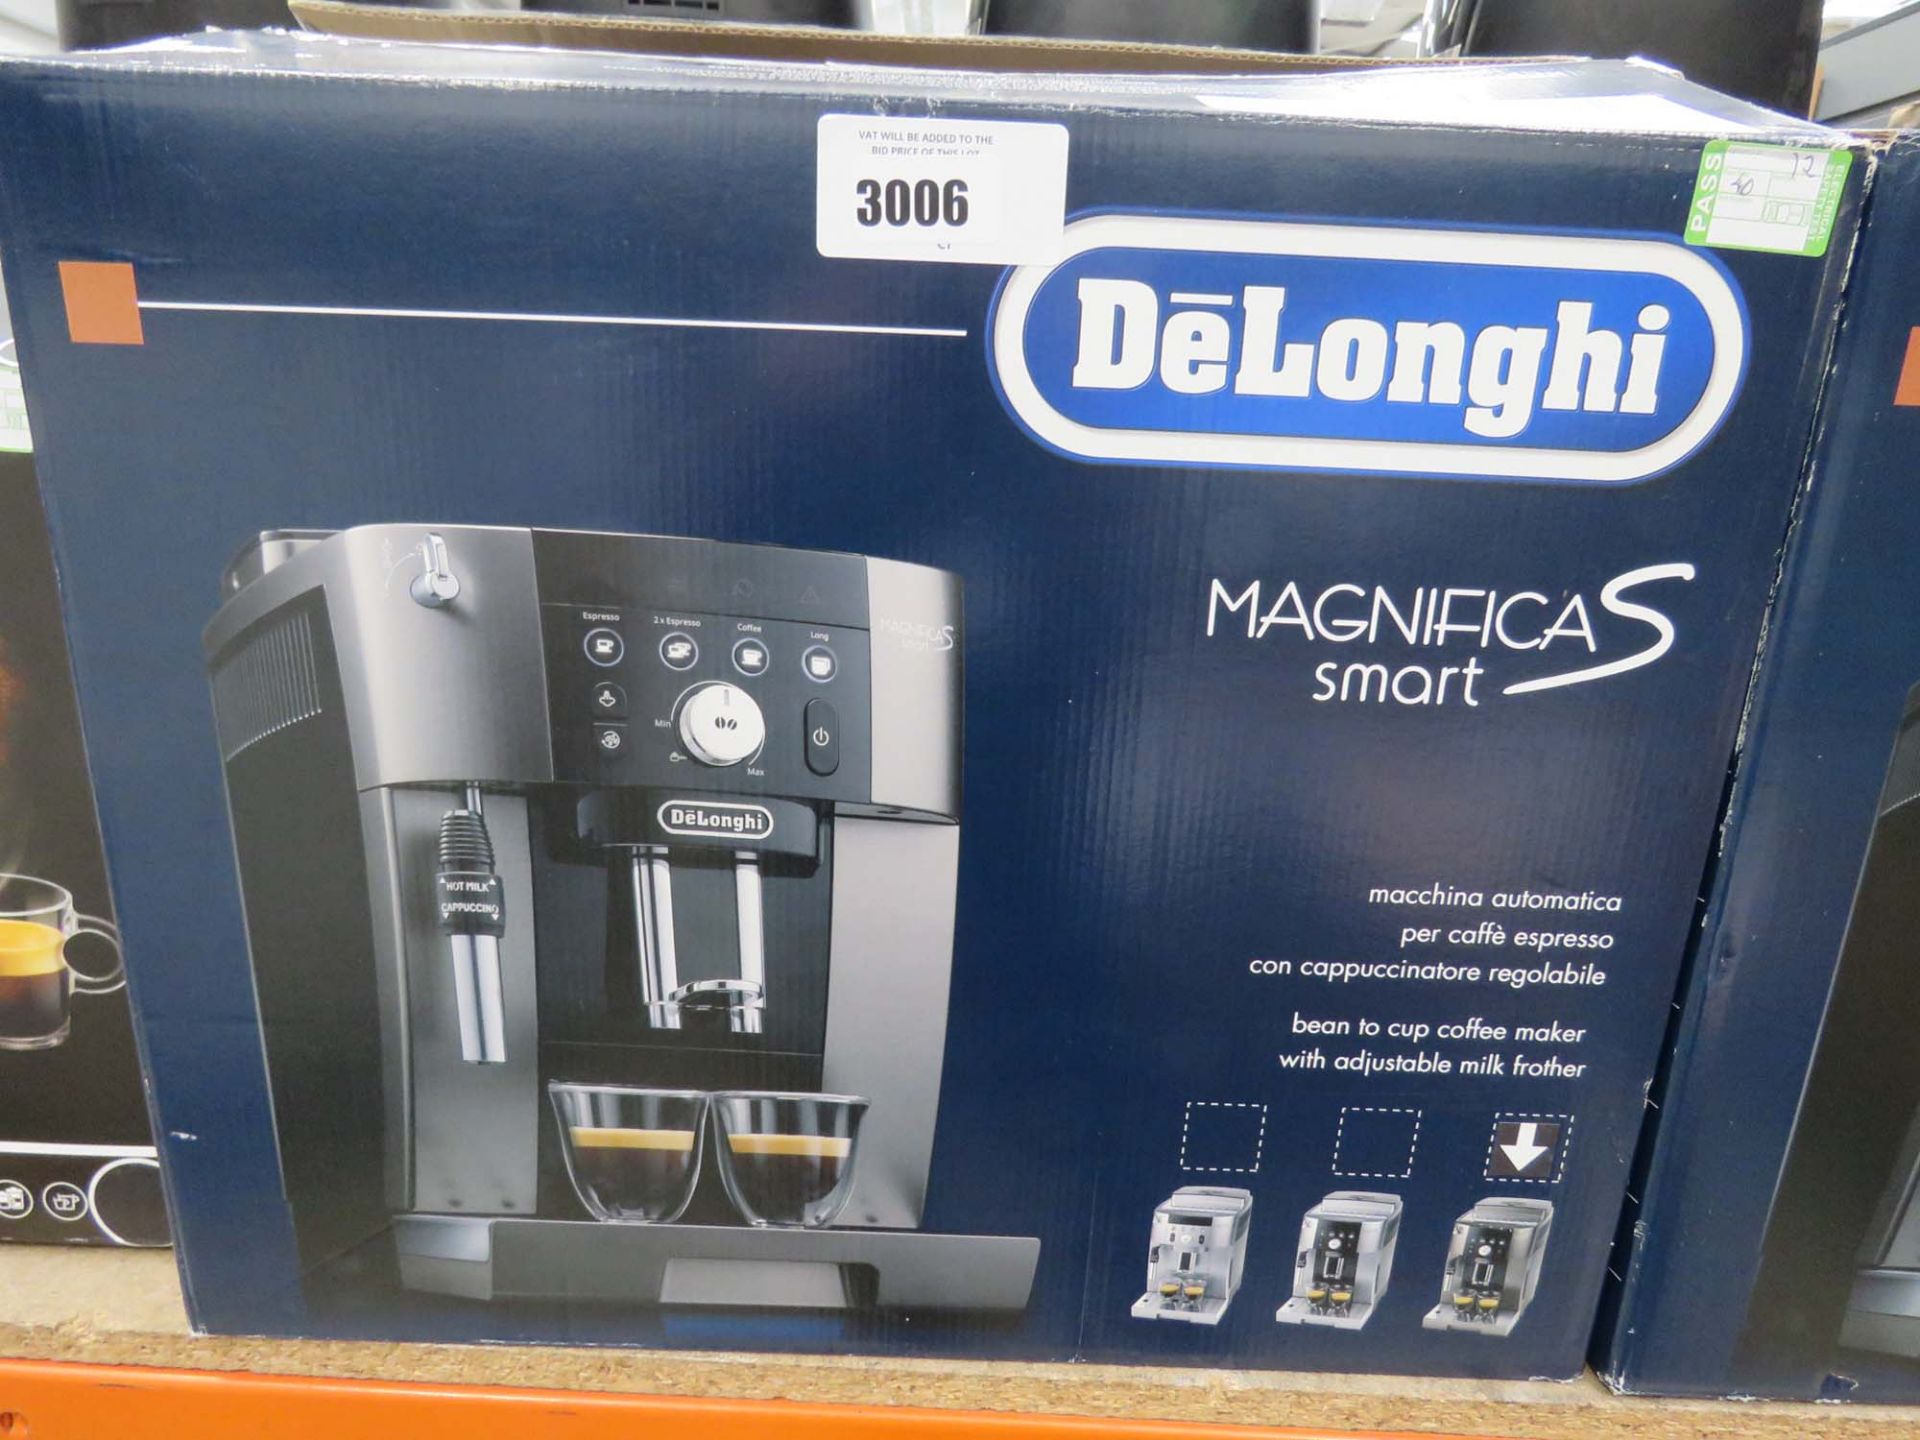 Delonghi Magnifica S Smart coffee machine